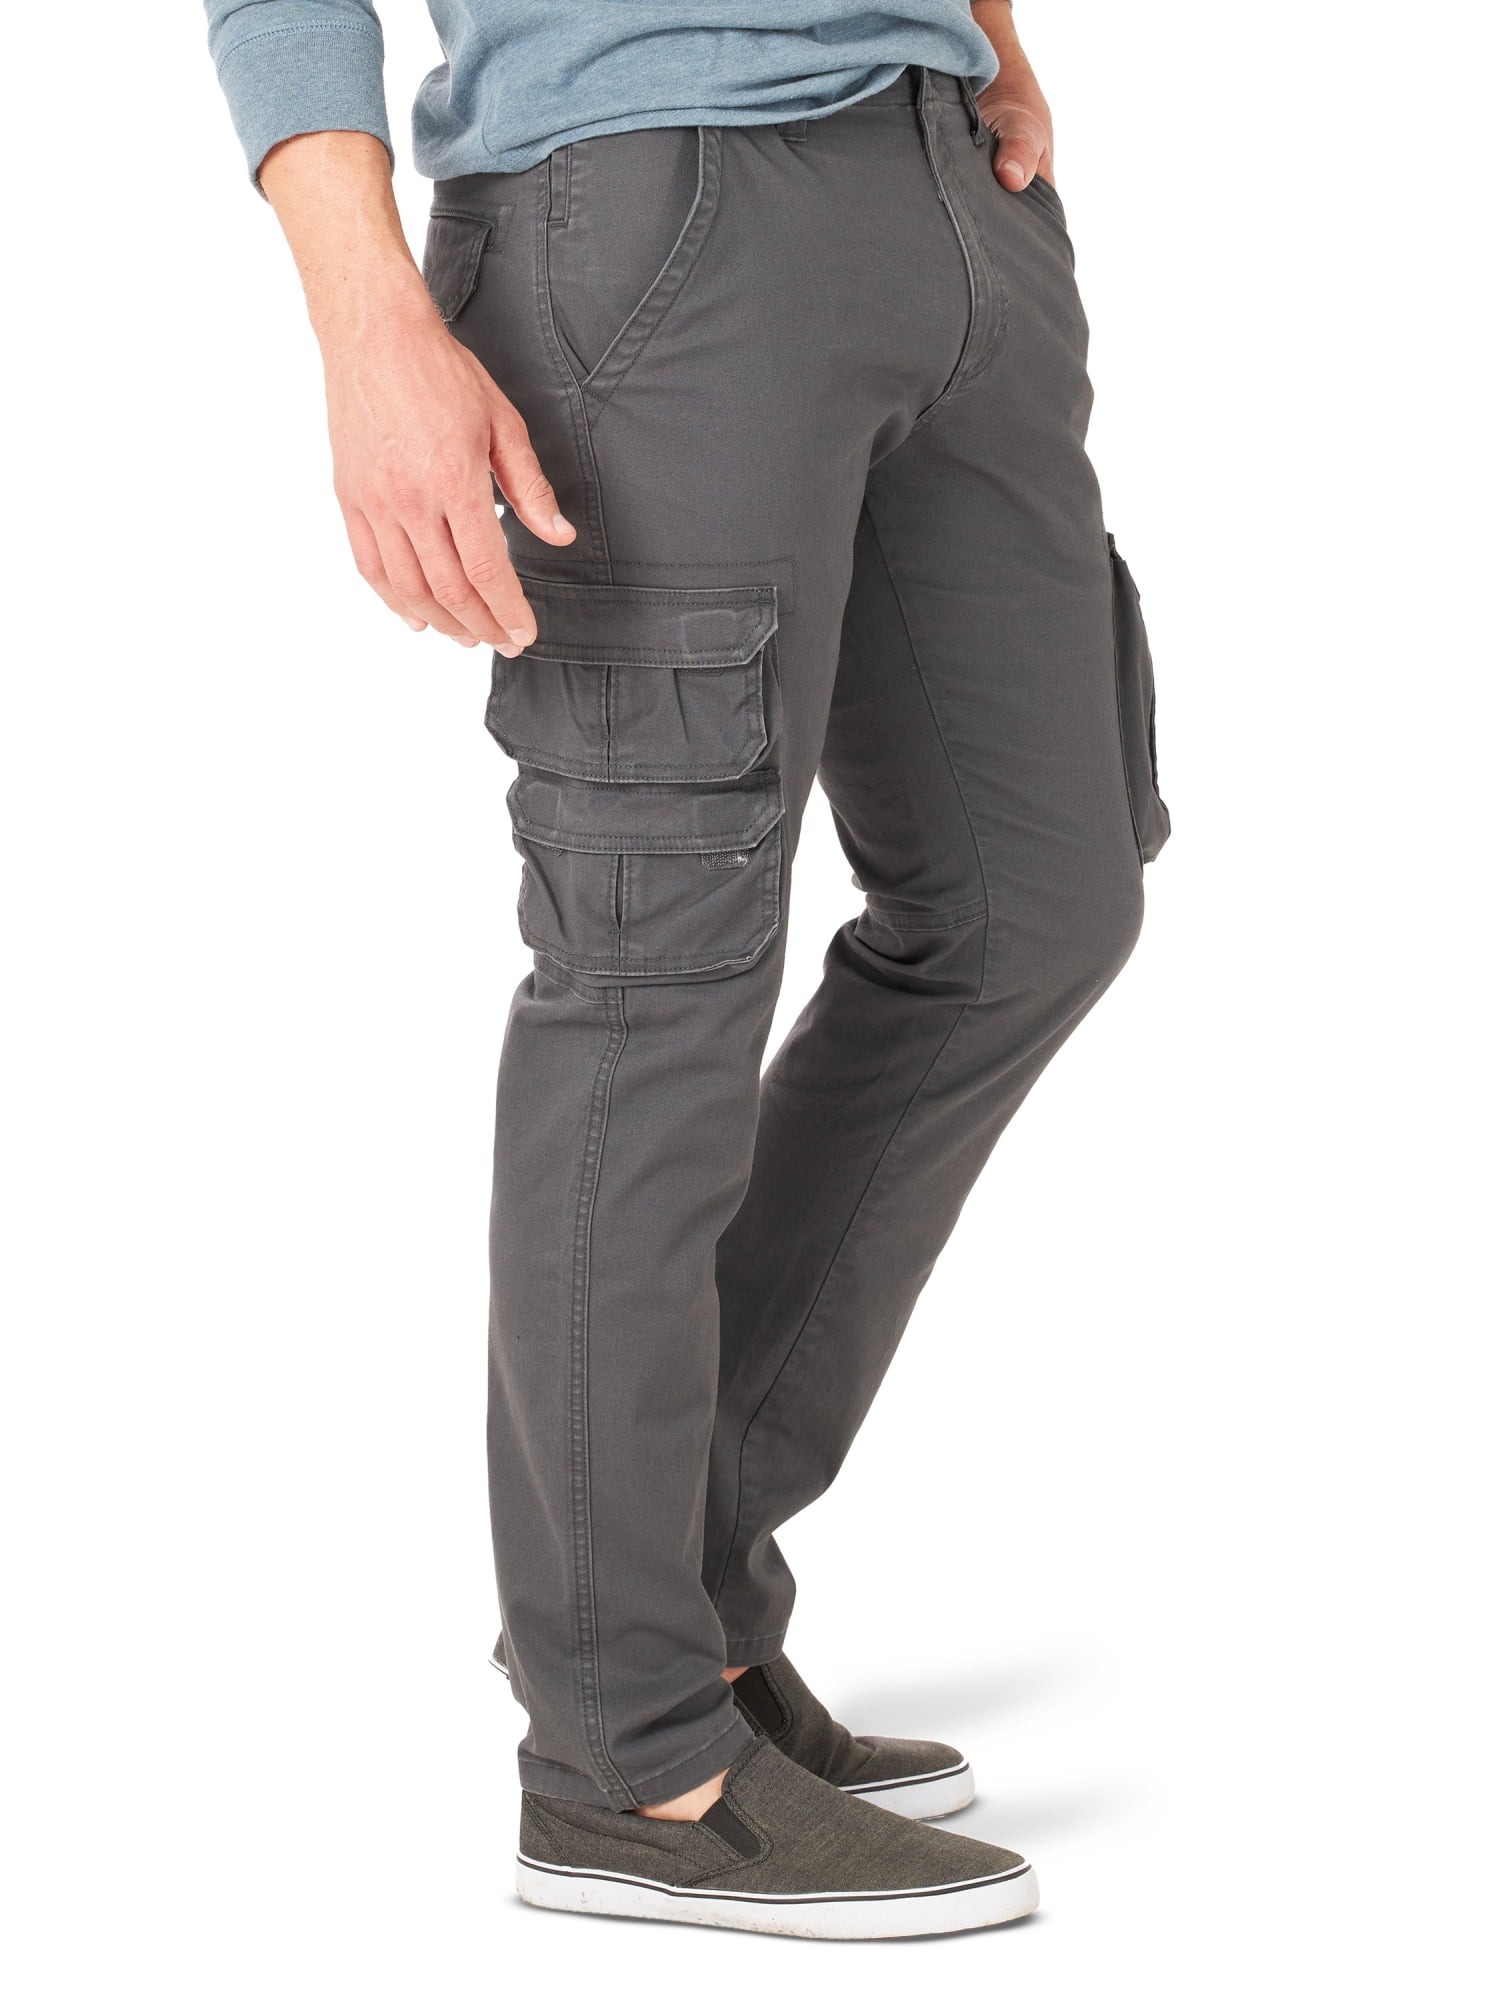 Wrangler 34 Size Pants for Men for sale | eBay